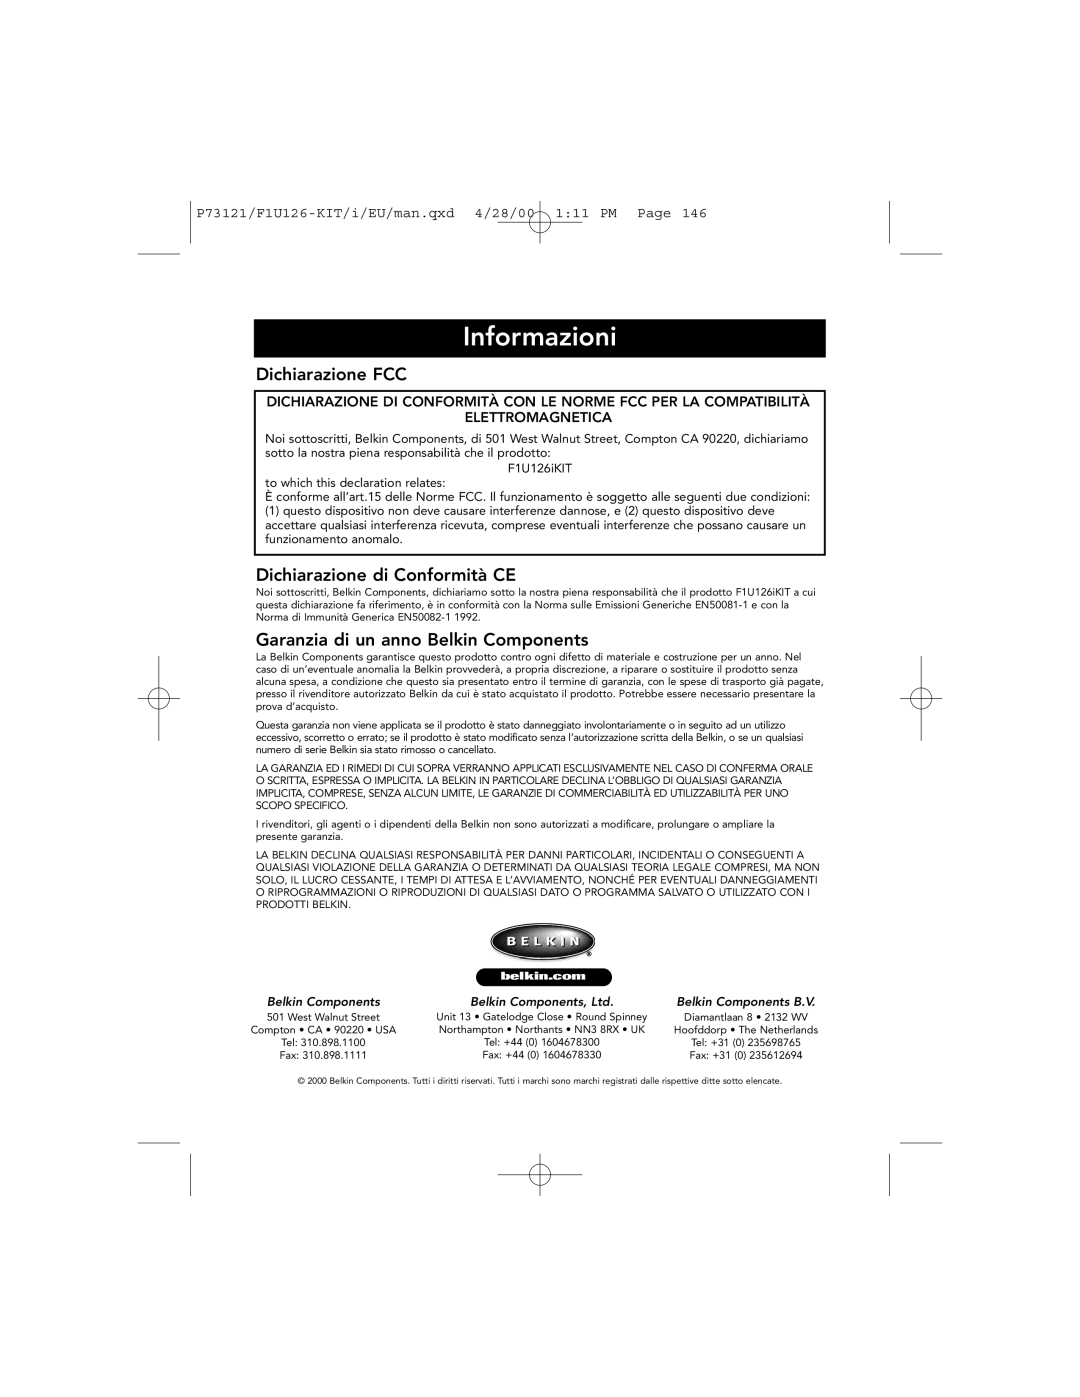 Belkin P73121 Informazioni, Dichiarazione FCC, Dichiarazione di Conformità CE, Garanzia di un anno Belkin Components 